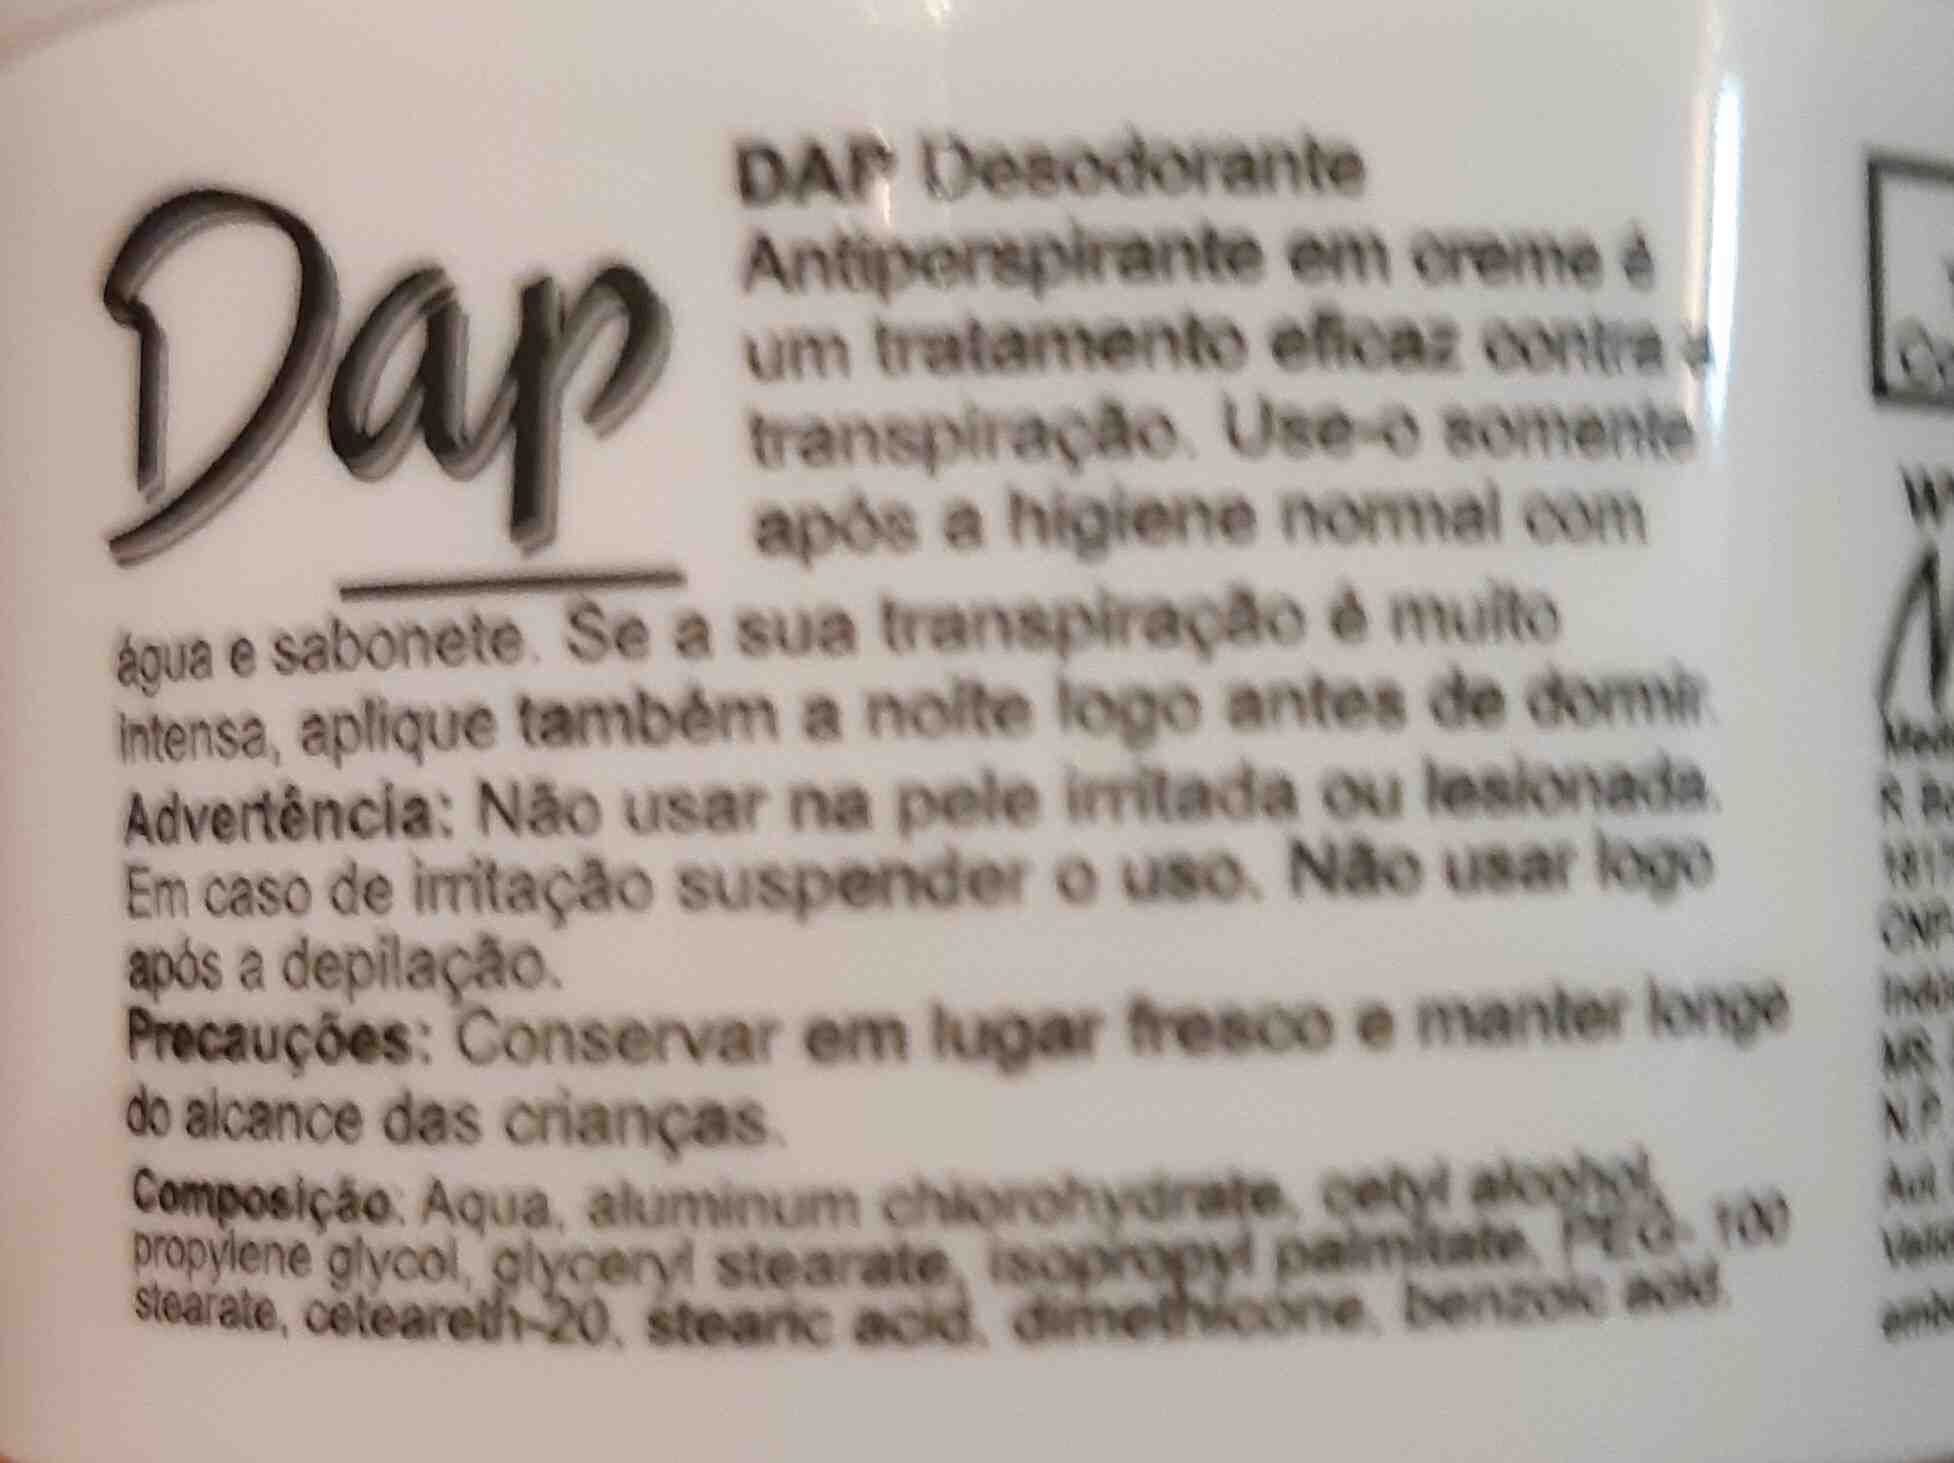 Dap desodorante - Složení - en